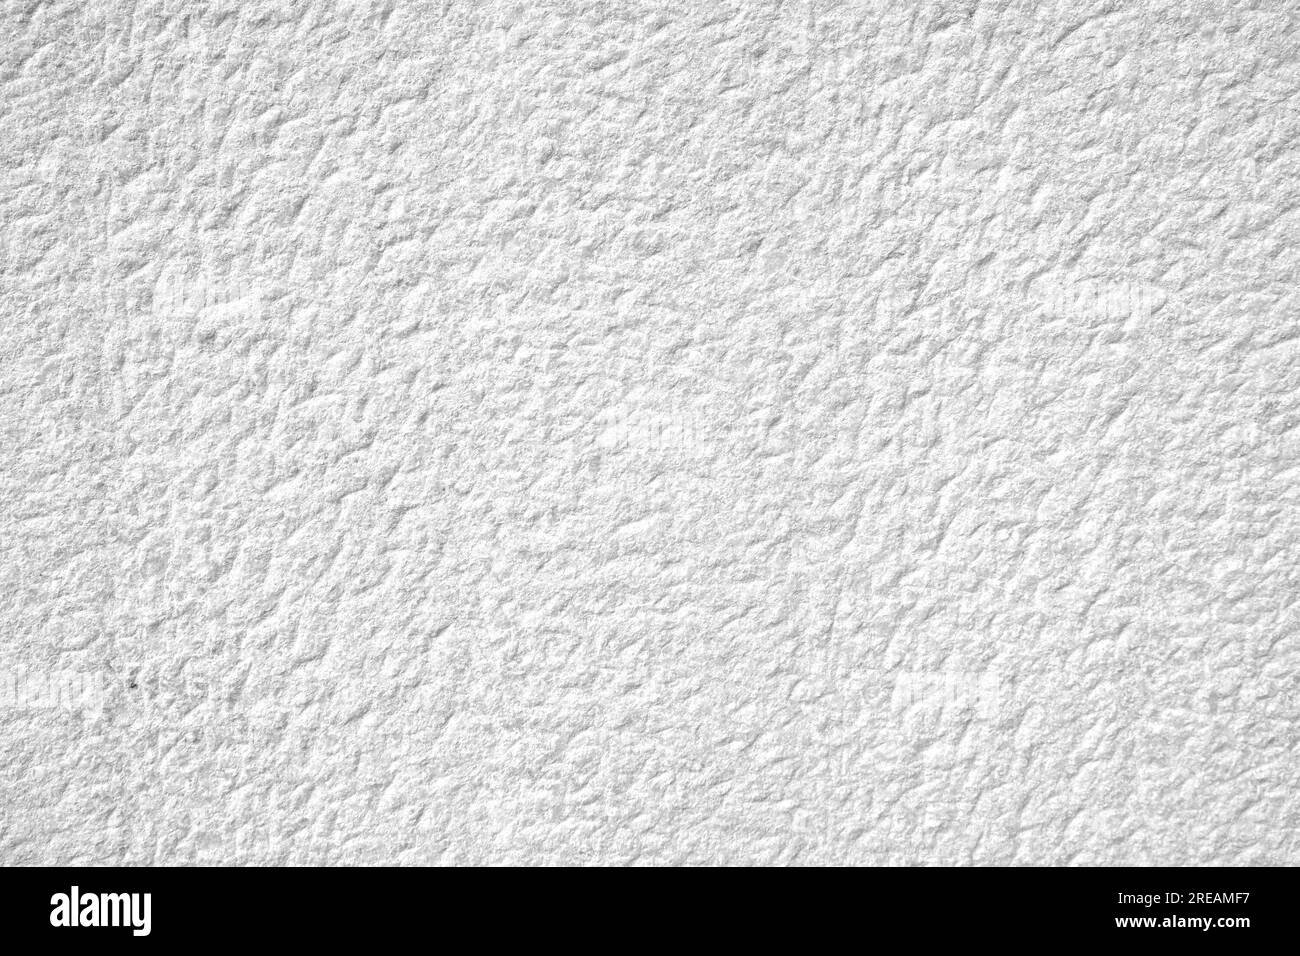 Mercedes Benz Schlüsselanhänger auf einer weißen Marmor Oberfläche  Stockfotografie - Alamy